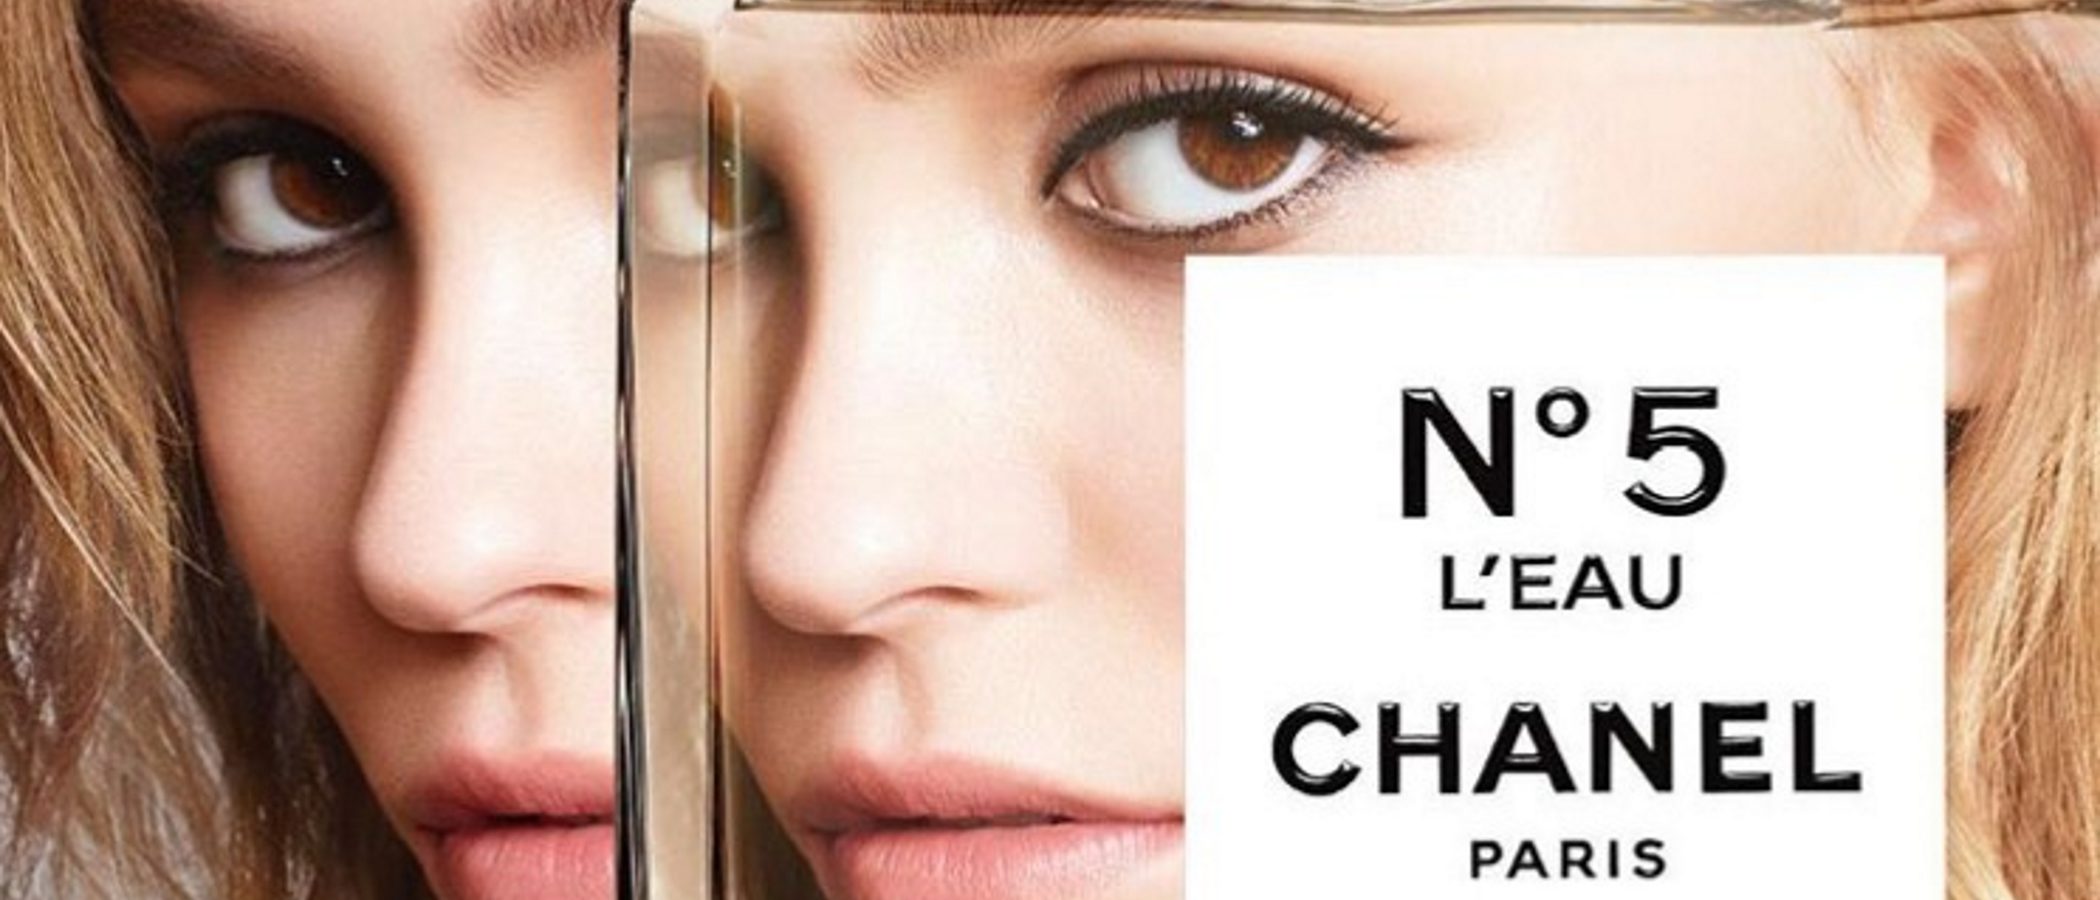 Mechas 'Tiger eye' a Chanel Nº 5: descubre las tendencias de belleza del año